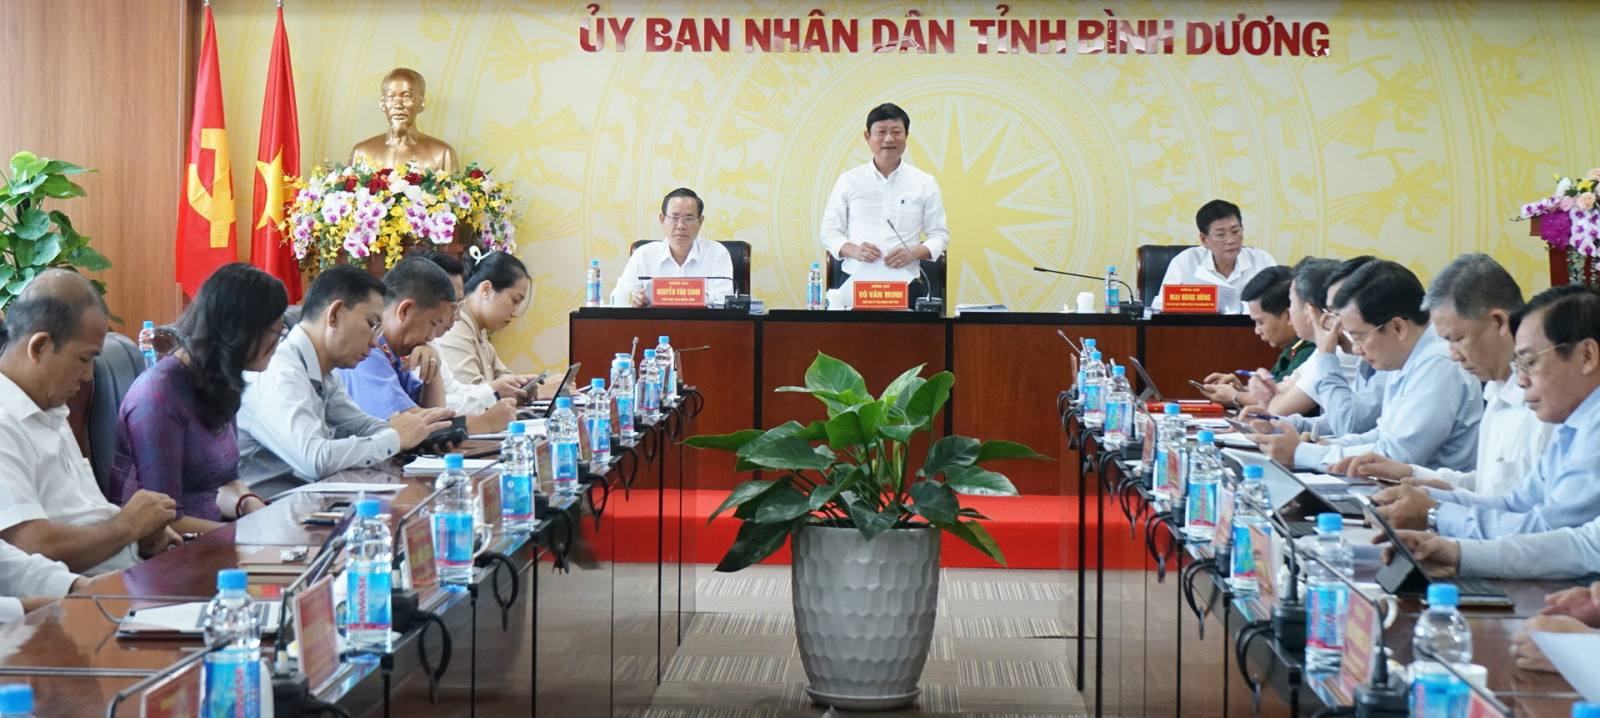 Đồng chí Võ Văn Minh, Phó Bí thư Tỉnh ủy, Chủ tịch UBND tỉnh phát biểu chỉ đạo tại phiên họp.